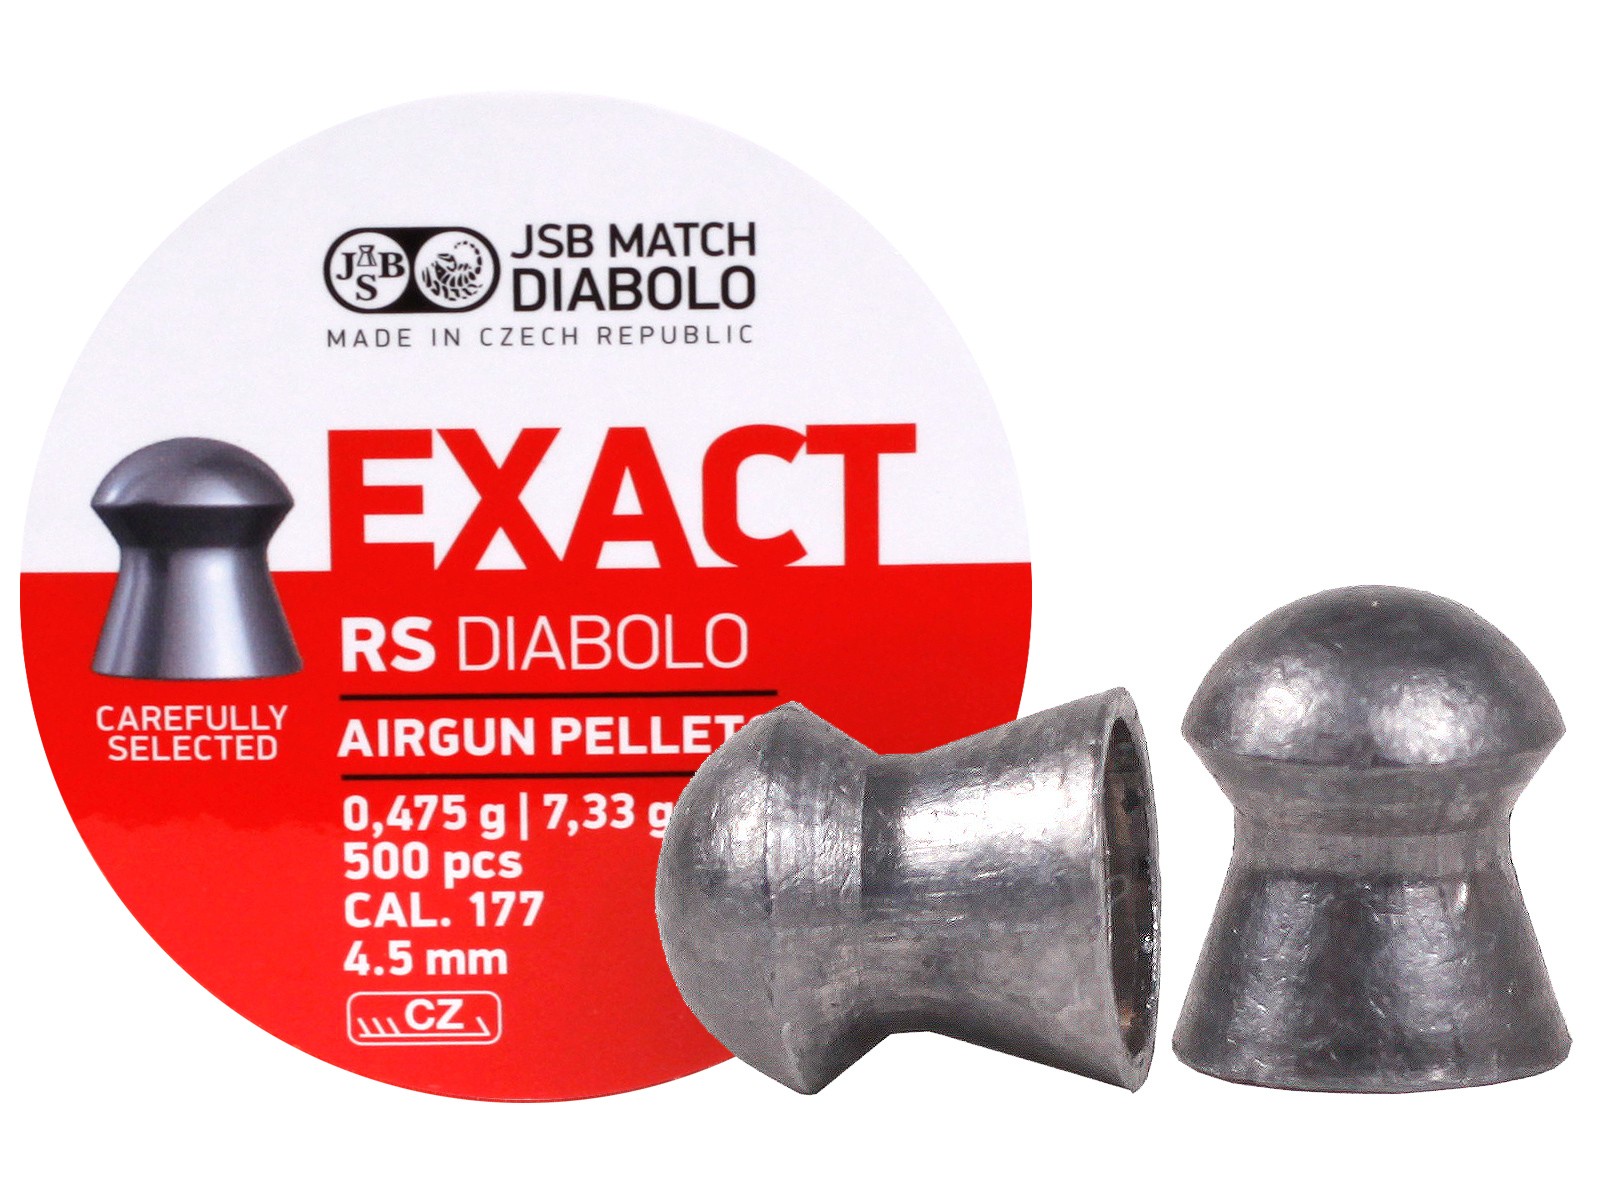 JSB Diabolo Exact Airgun Pellets cal 4.5 mm 500 pcs 546235-500 